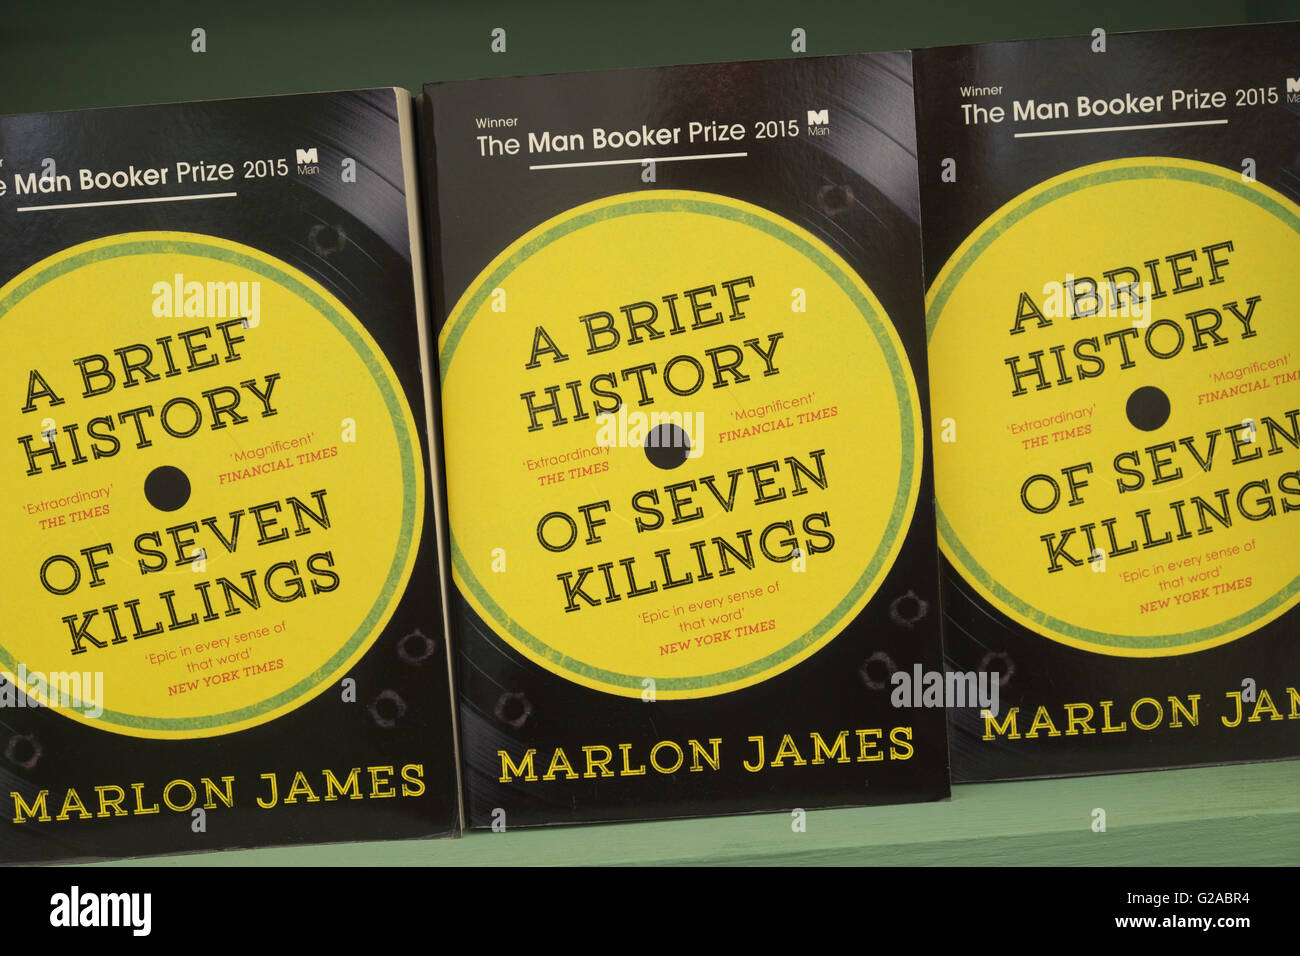 Marlon James el hombre ganador del premio Booker en 2015 con su libro "Una breve historia de siete asesinatos Foto de stock